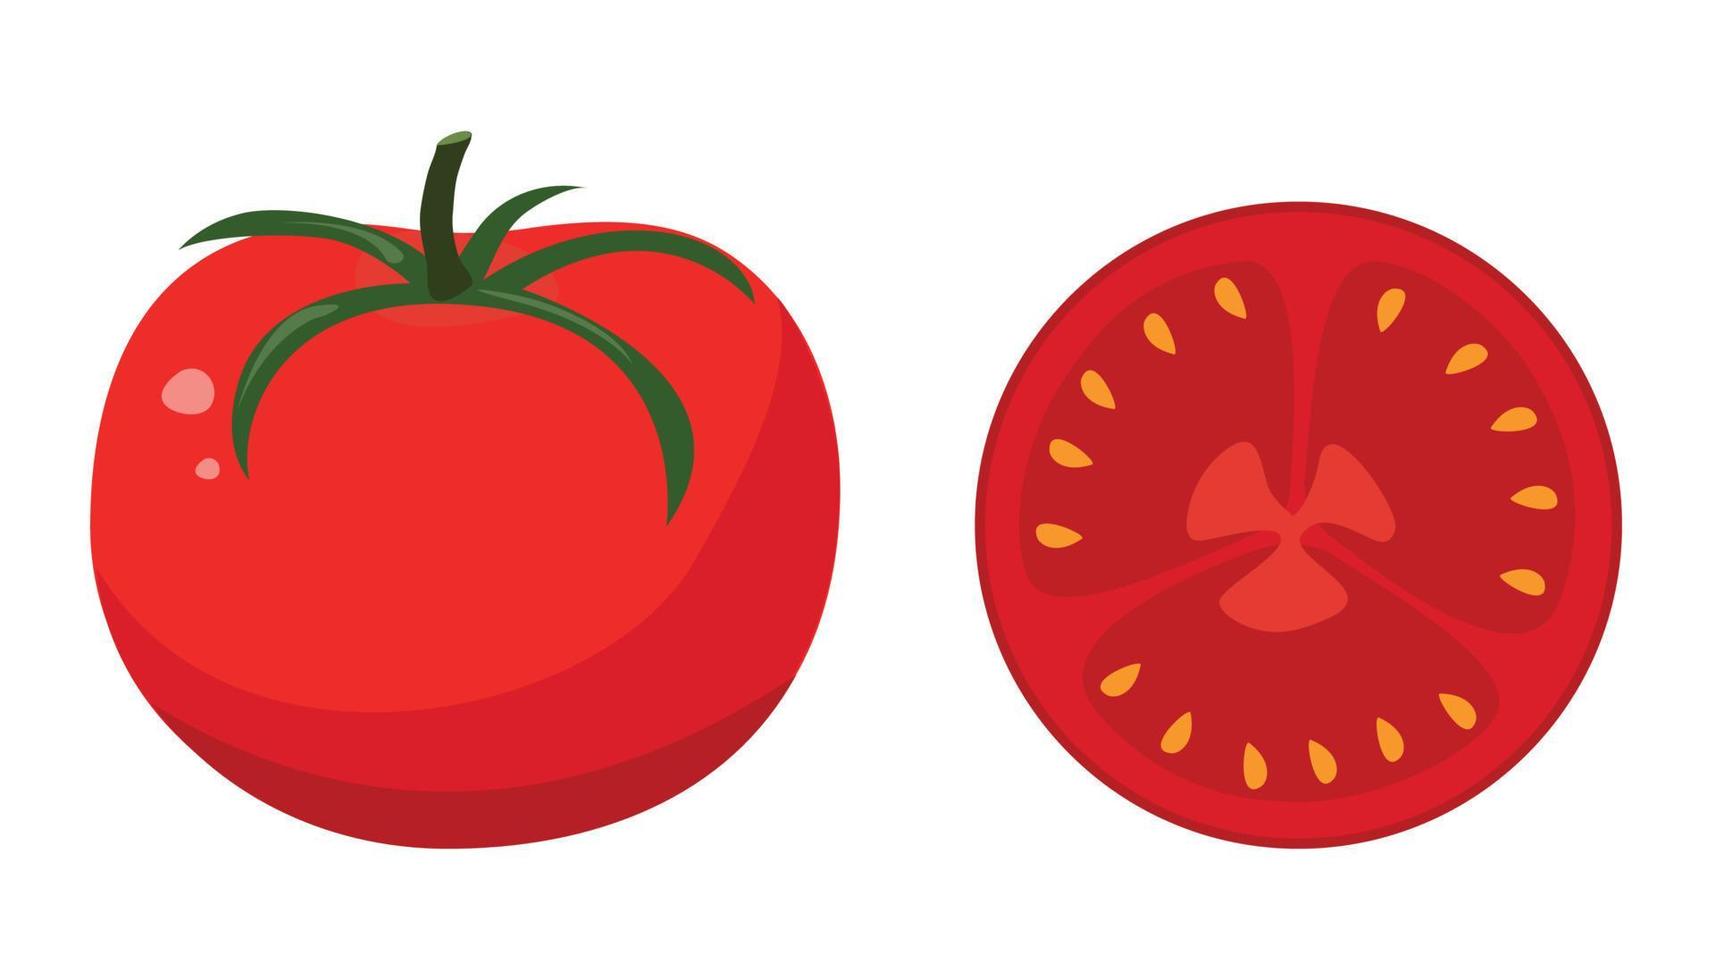 tomate rojo al estilo plano. ilustración vectorial vector